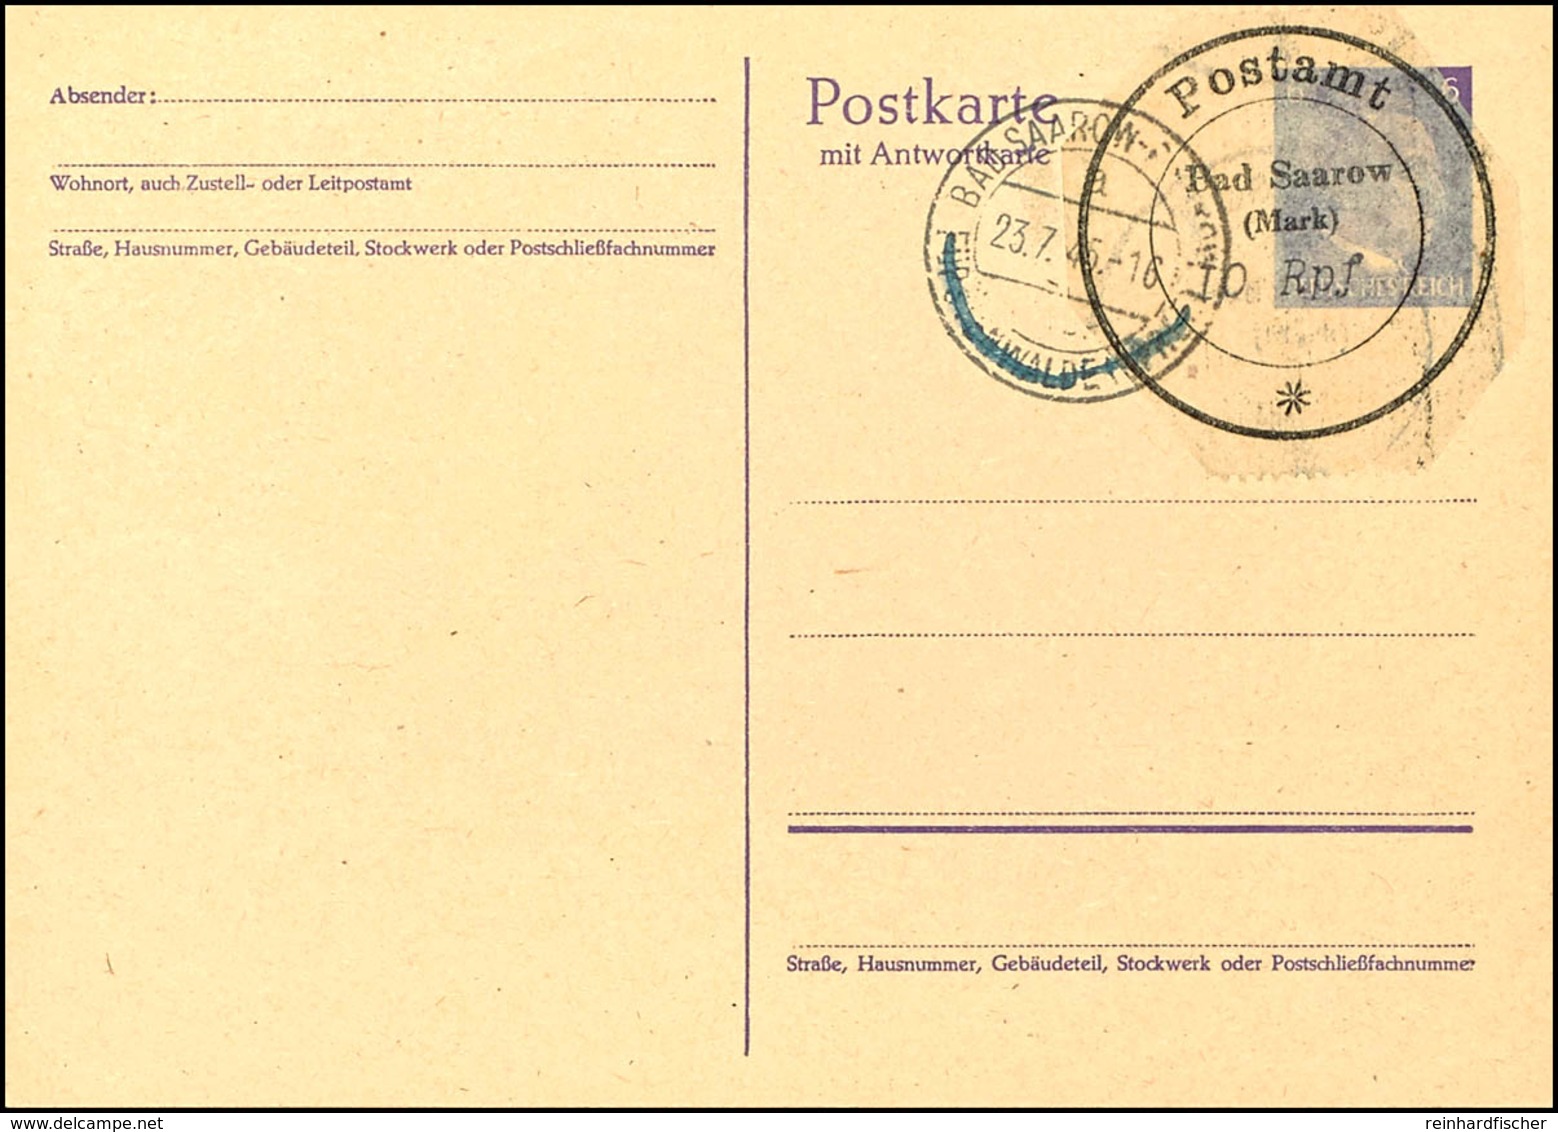 10 Pfg Postverschlusszettel, Zwei Stück, Auf Blanko-Ganzsachen-Doppelpostkarte 6 Pfg Hitler, Je Einer Auf Der Frage- Bzw - Bad Saarow